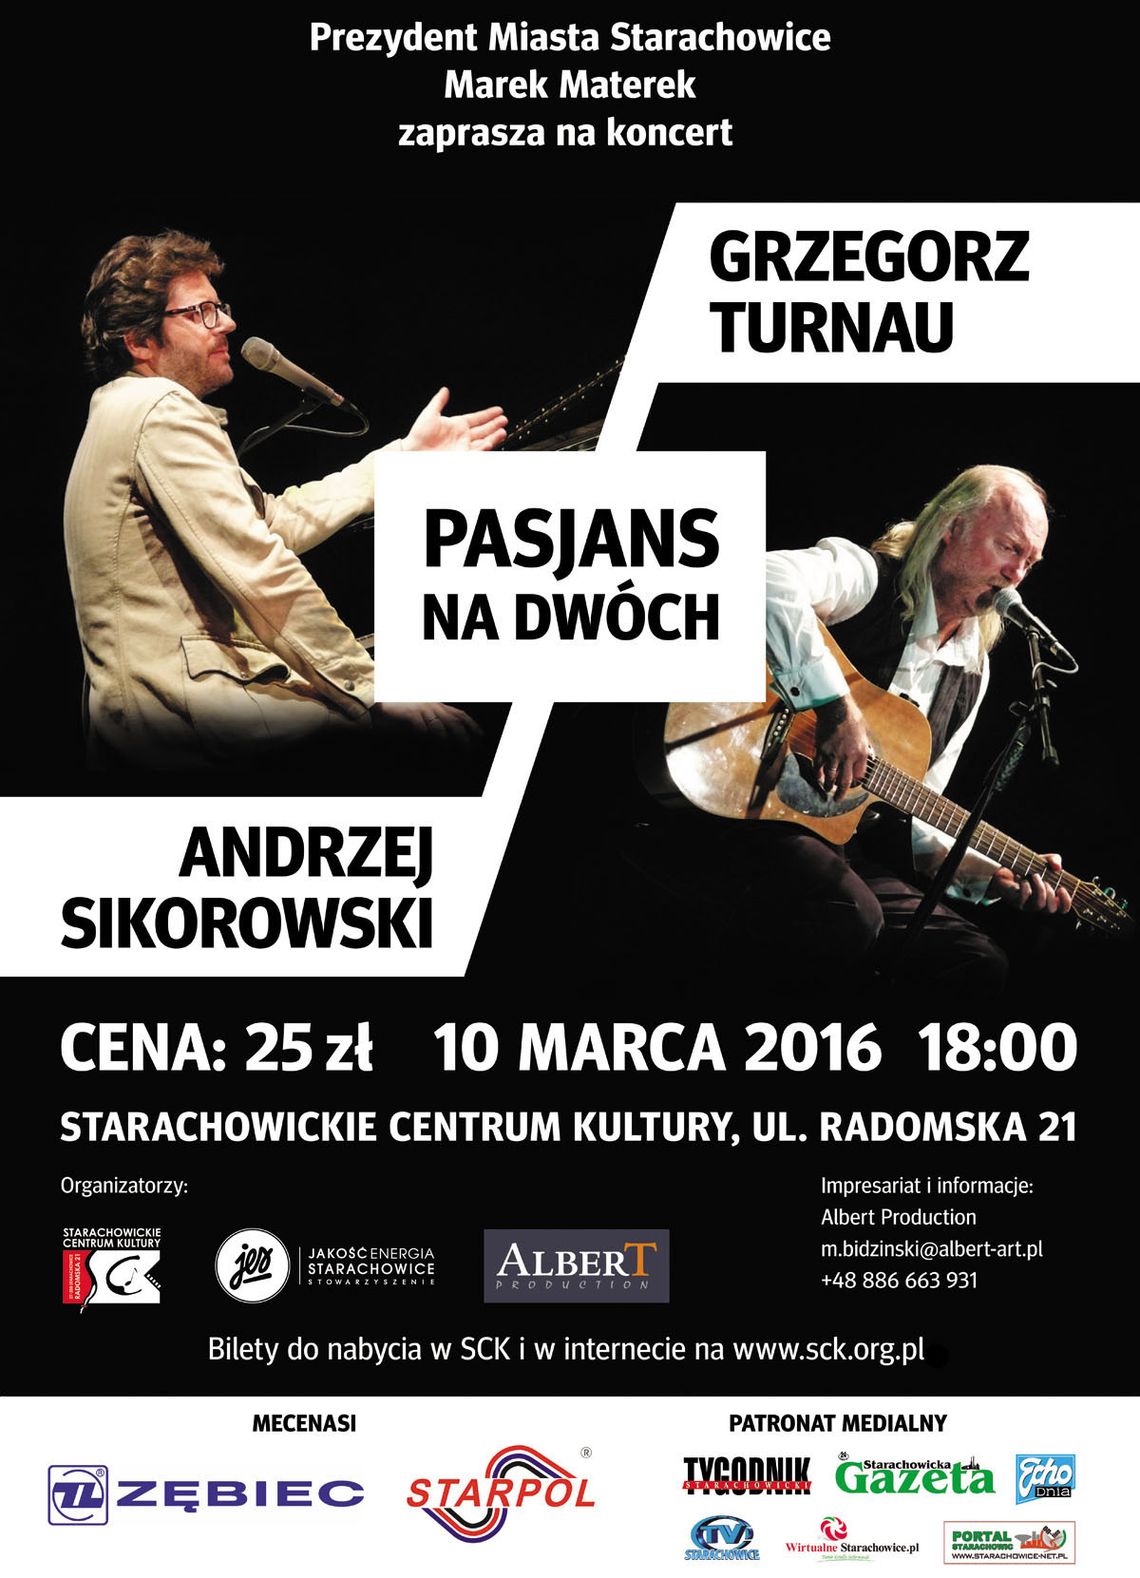 Grzegorz Turnau & Andrzej Sikorowski "Pasjans na dwóch"